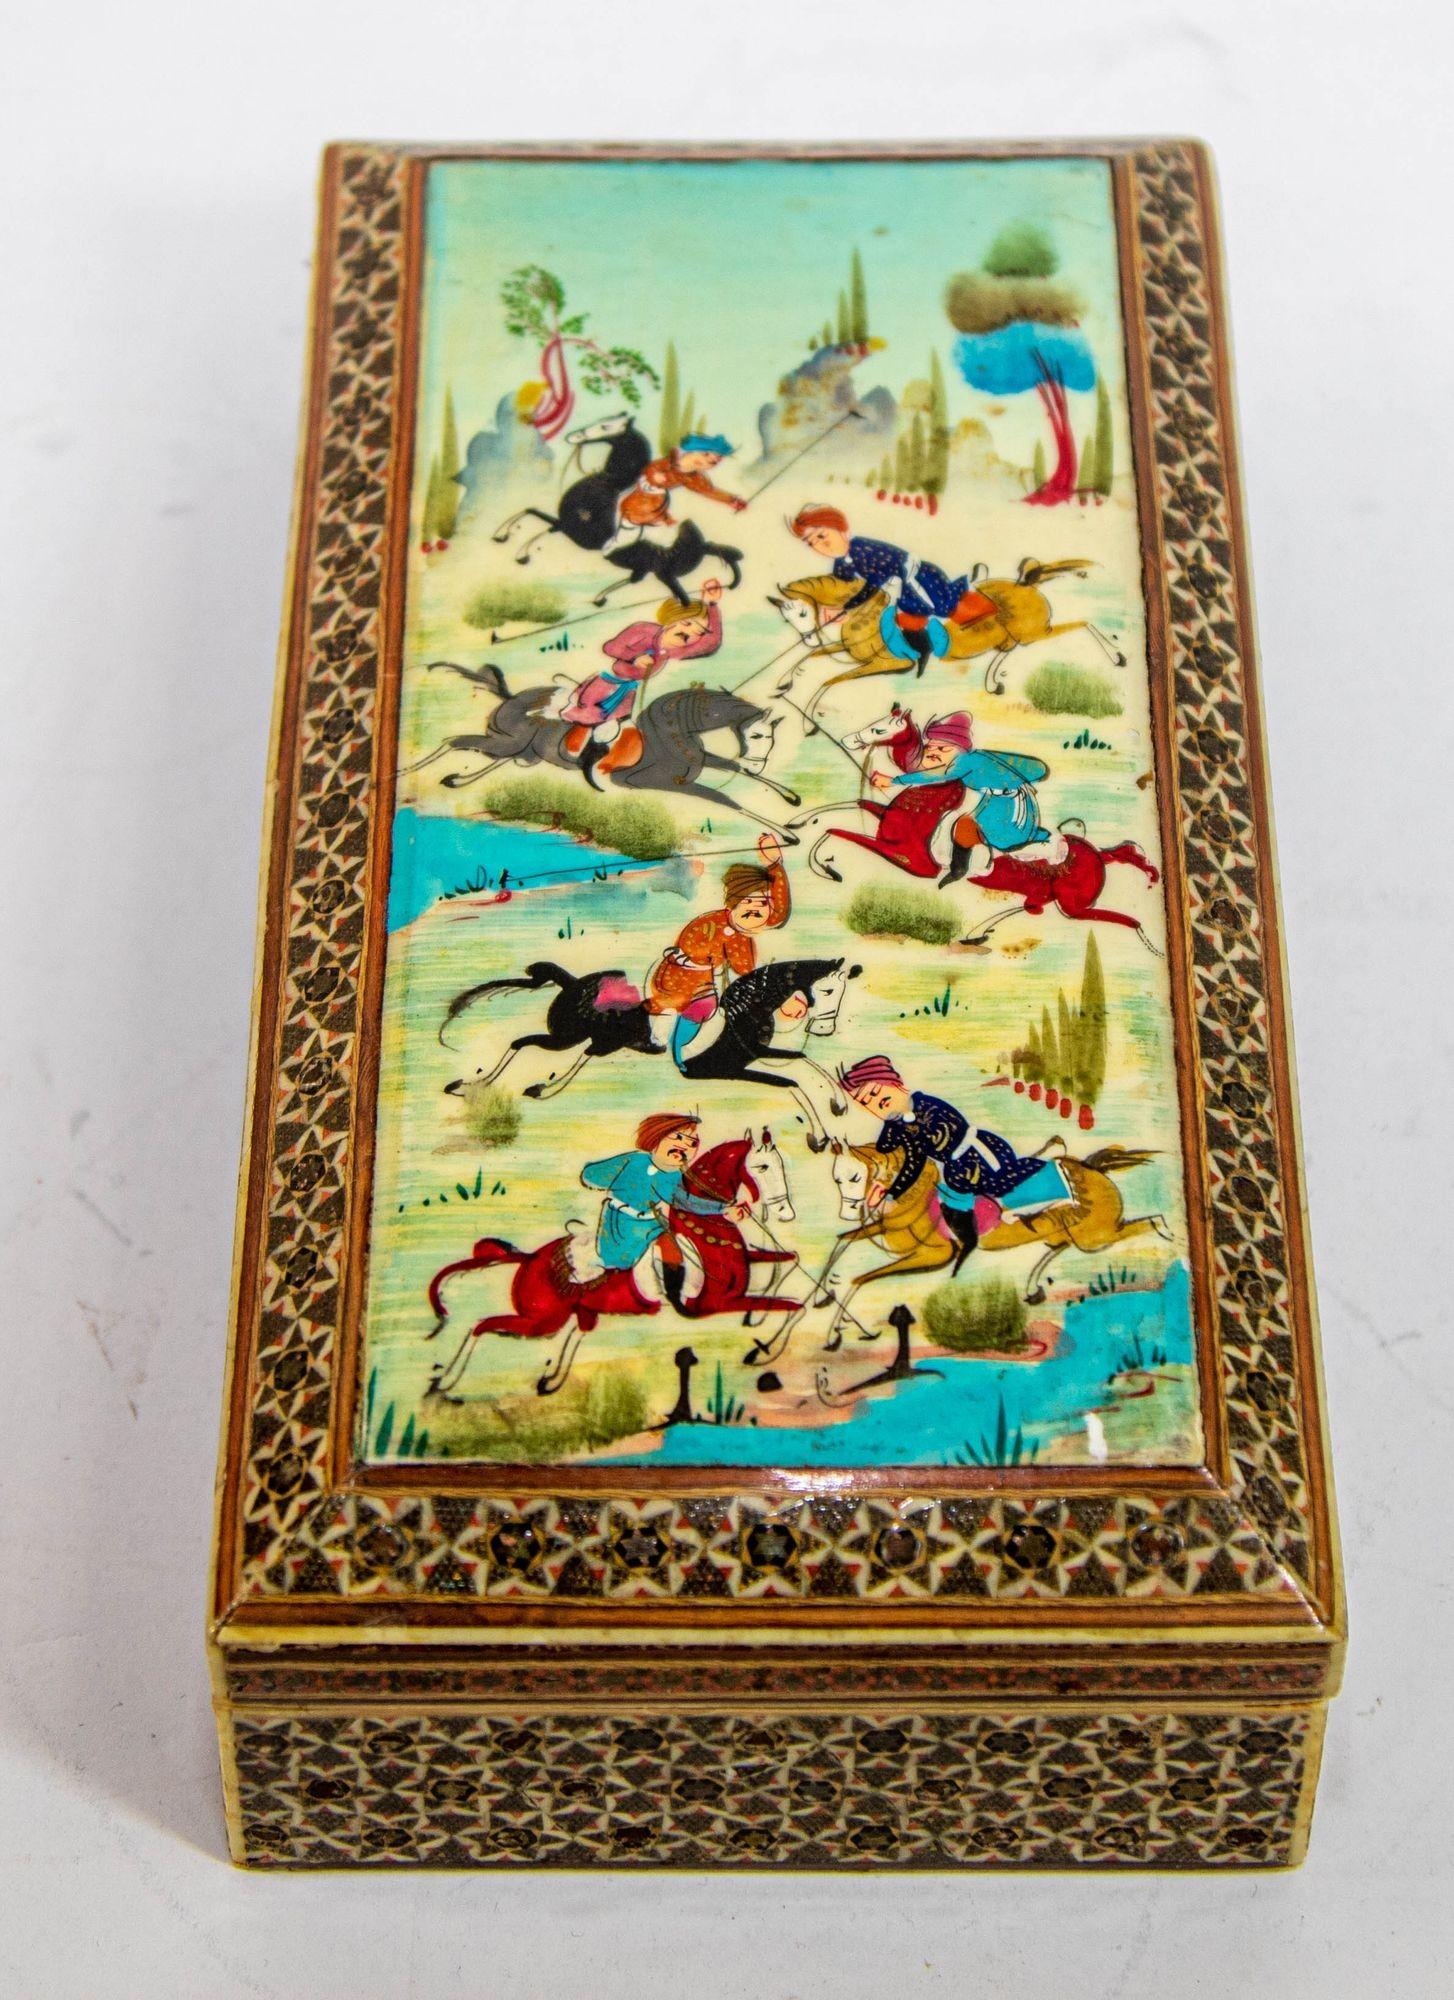 Fine antique large handcrafted vintage marquetry Indo Persian wood inlay micro mosaïque avec miniature scène peinte à la main.
Boîte précieuse ancienne en micro-mosaïque incrustée de motifs géométriques et d'une scène miniature de peinture islamique